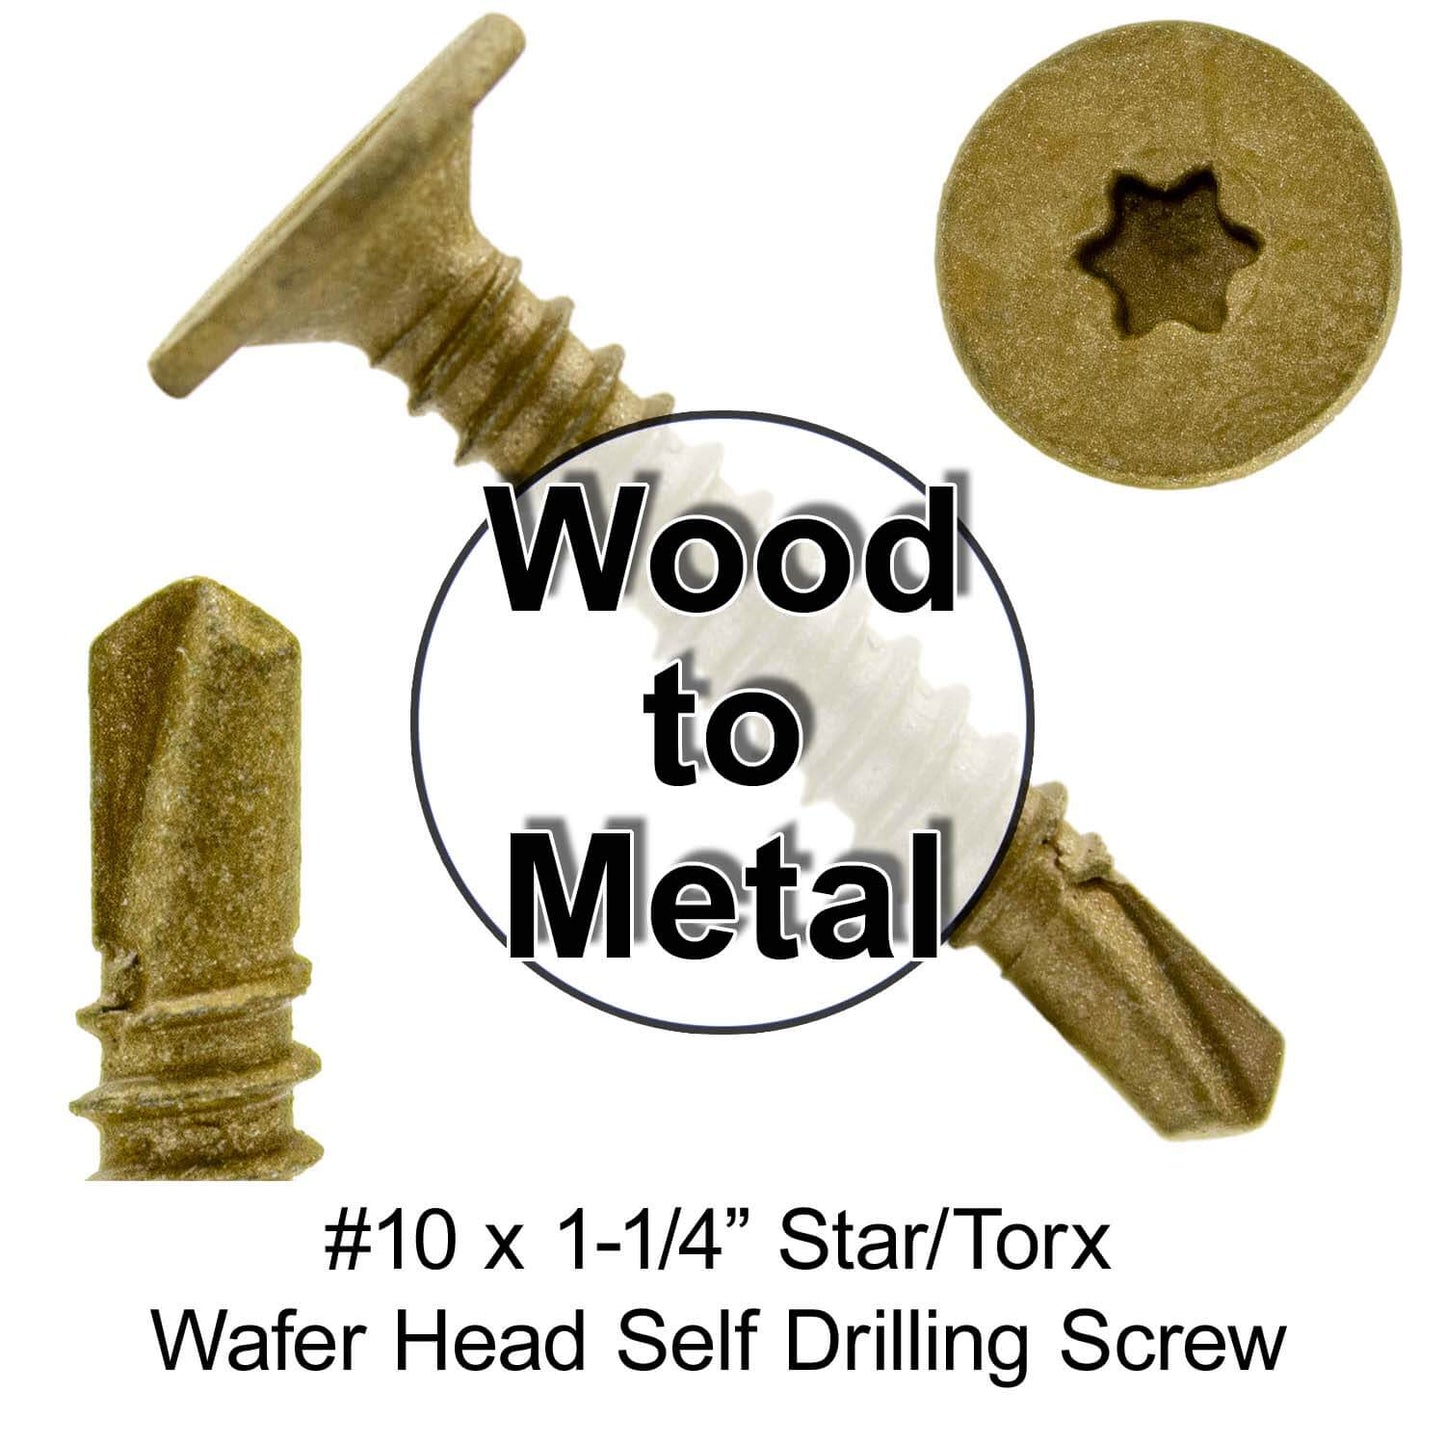 #10 Self Drilling Wafer Head Screws -  Wood to Metal - Self Tapping Star/Torx TEK Screw